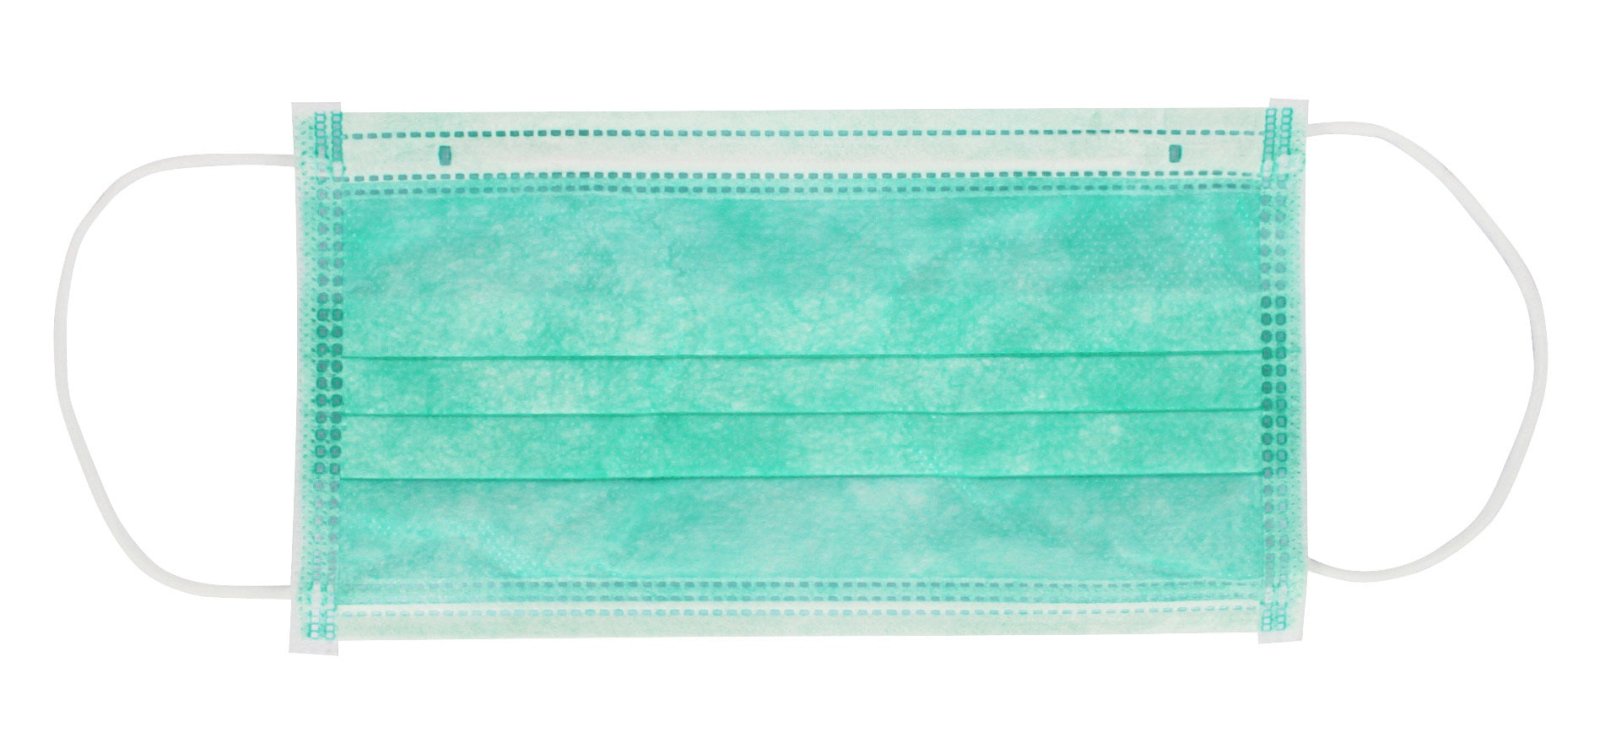 Medi-Inn Mundschutz Atemschutz mit Nasenbügel und Elastikbändern Typ IIR 3-lagig grün